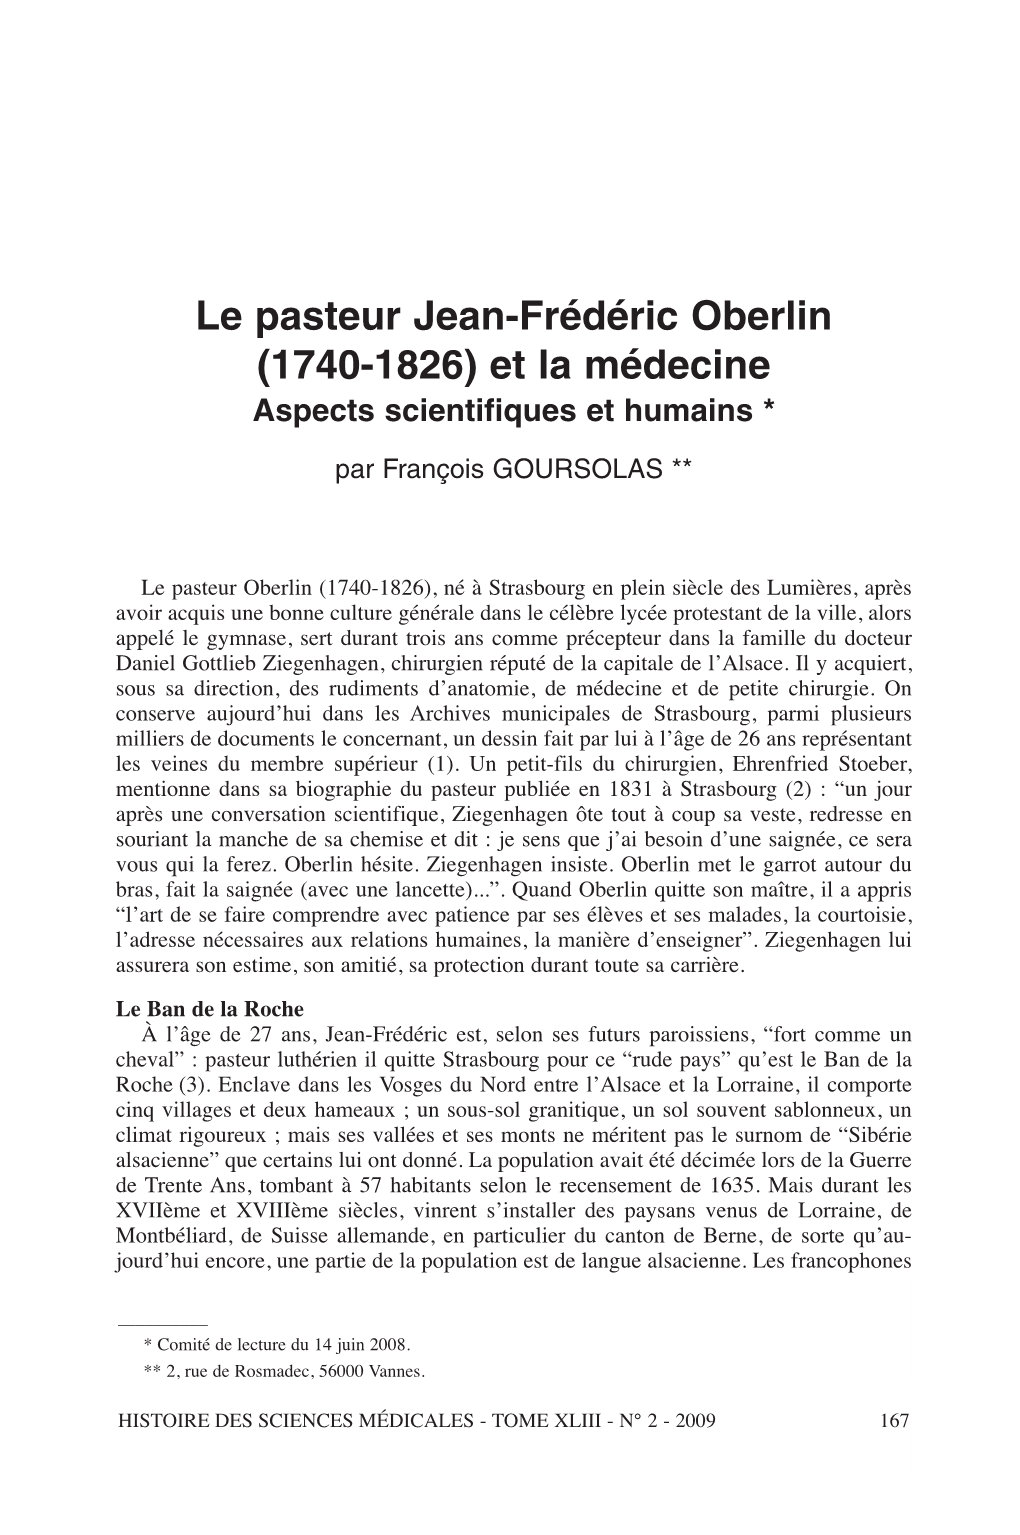 Le Pasteur Jean-Frédéric Oberlin (1740-1826) Et La Médecine. Aspects Scientifiques Et Humains the Pastor